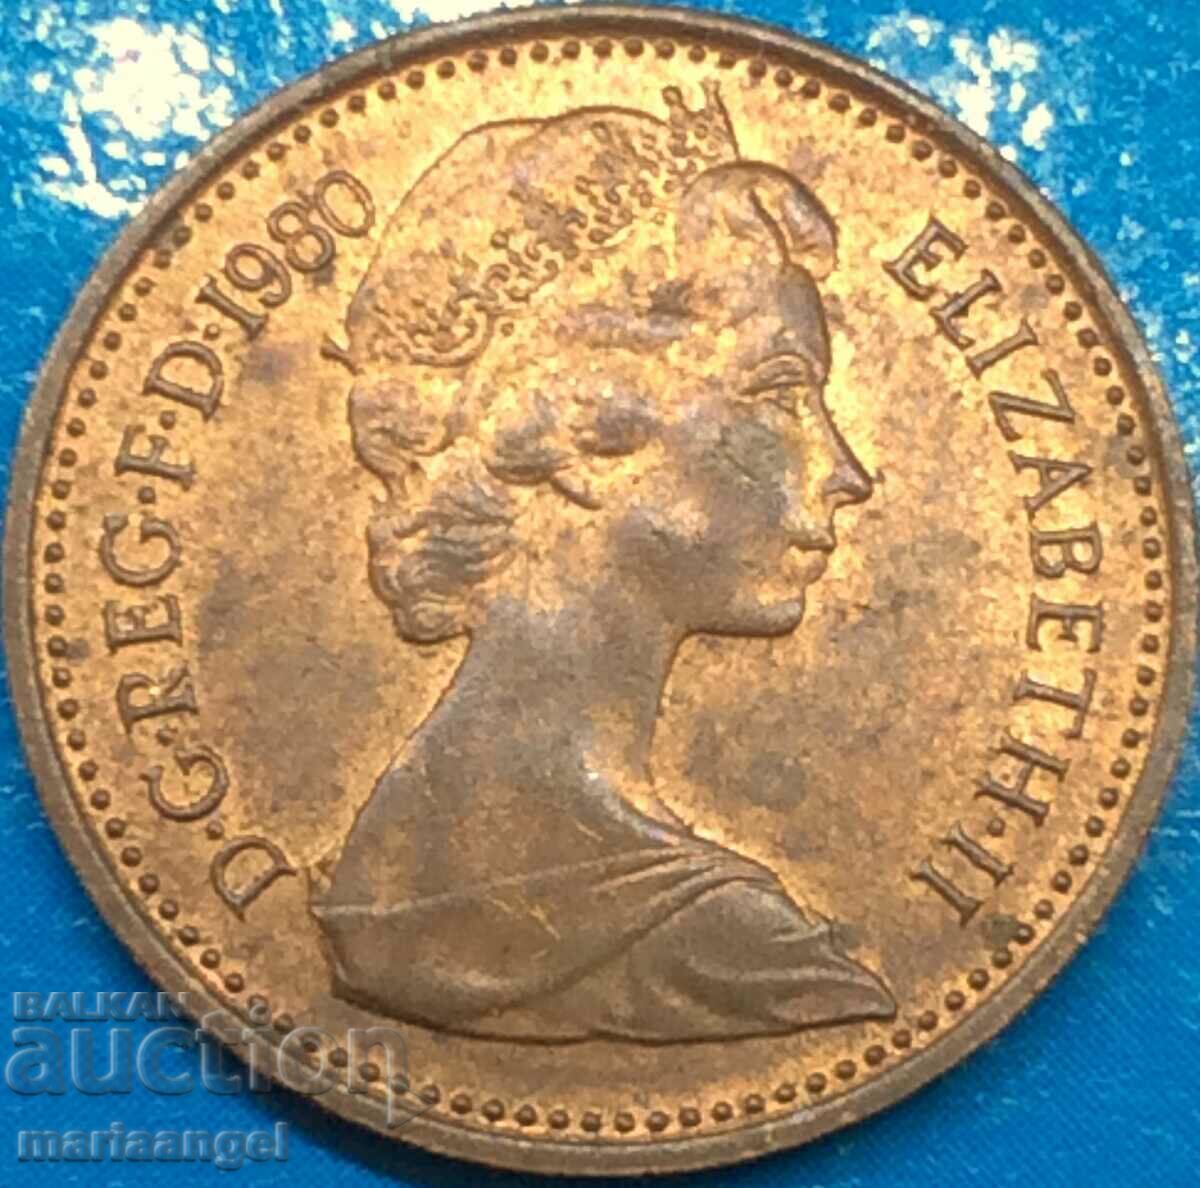 Marea Britanie 1/2 penny 1980 Elizabeth